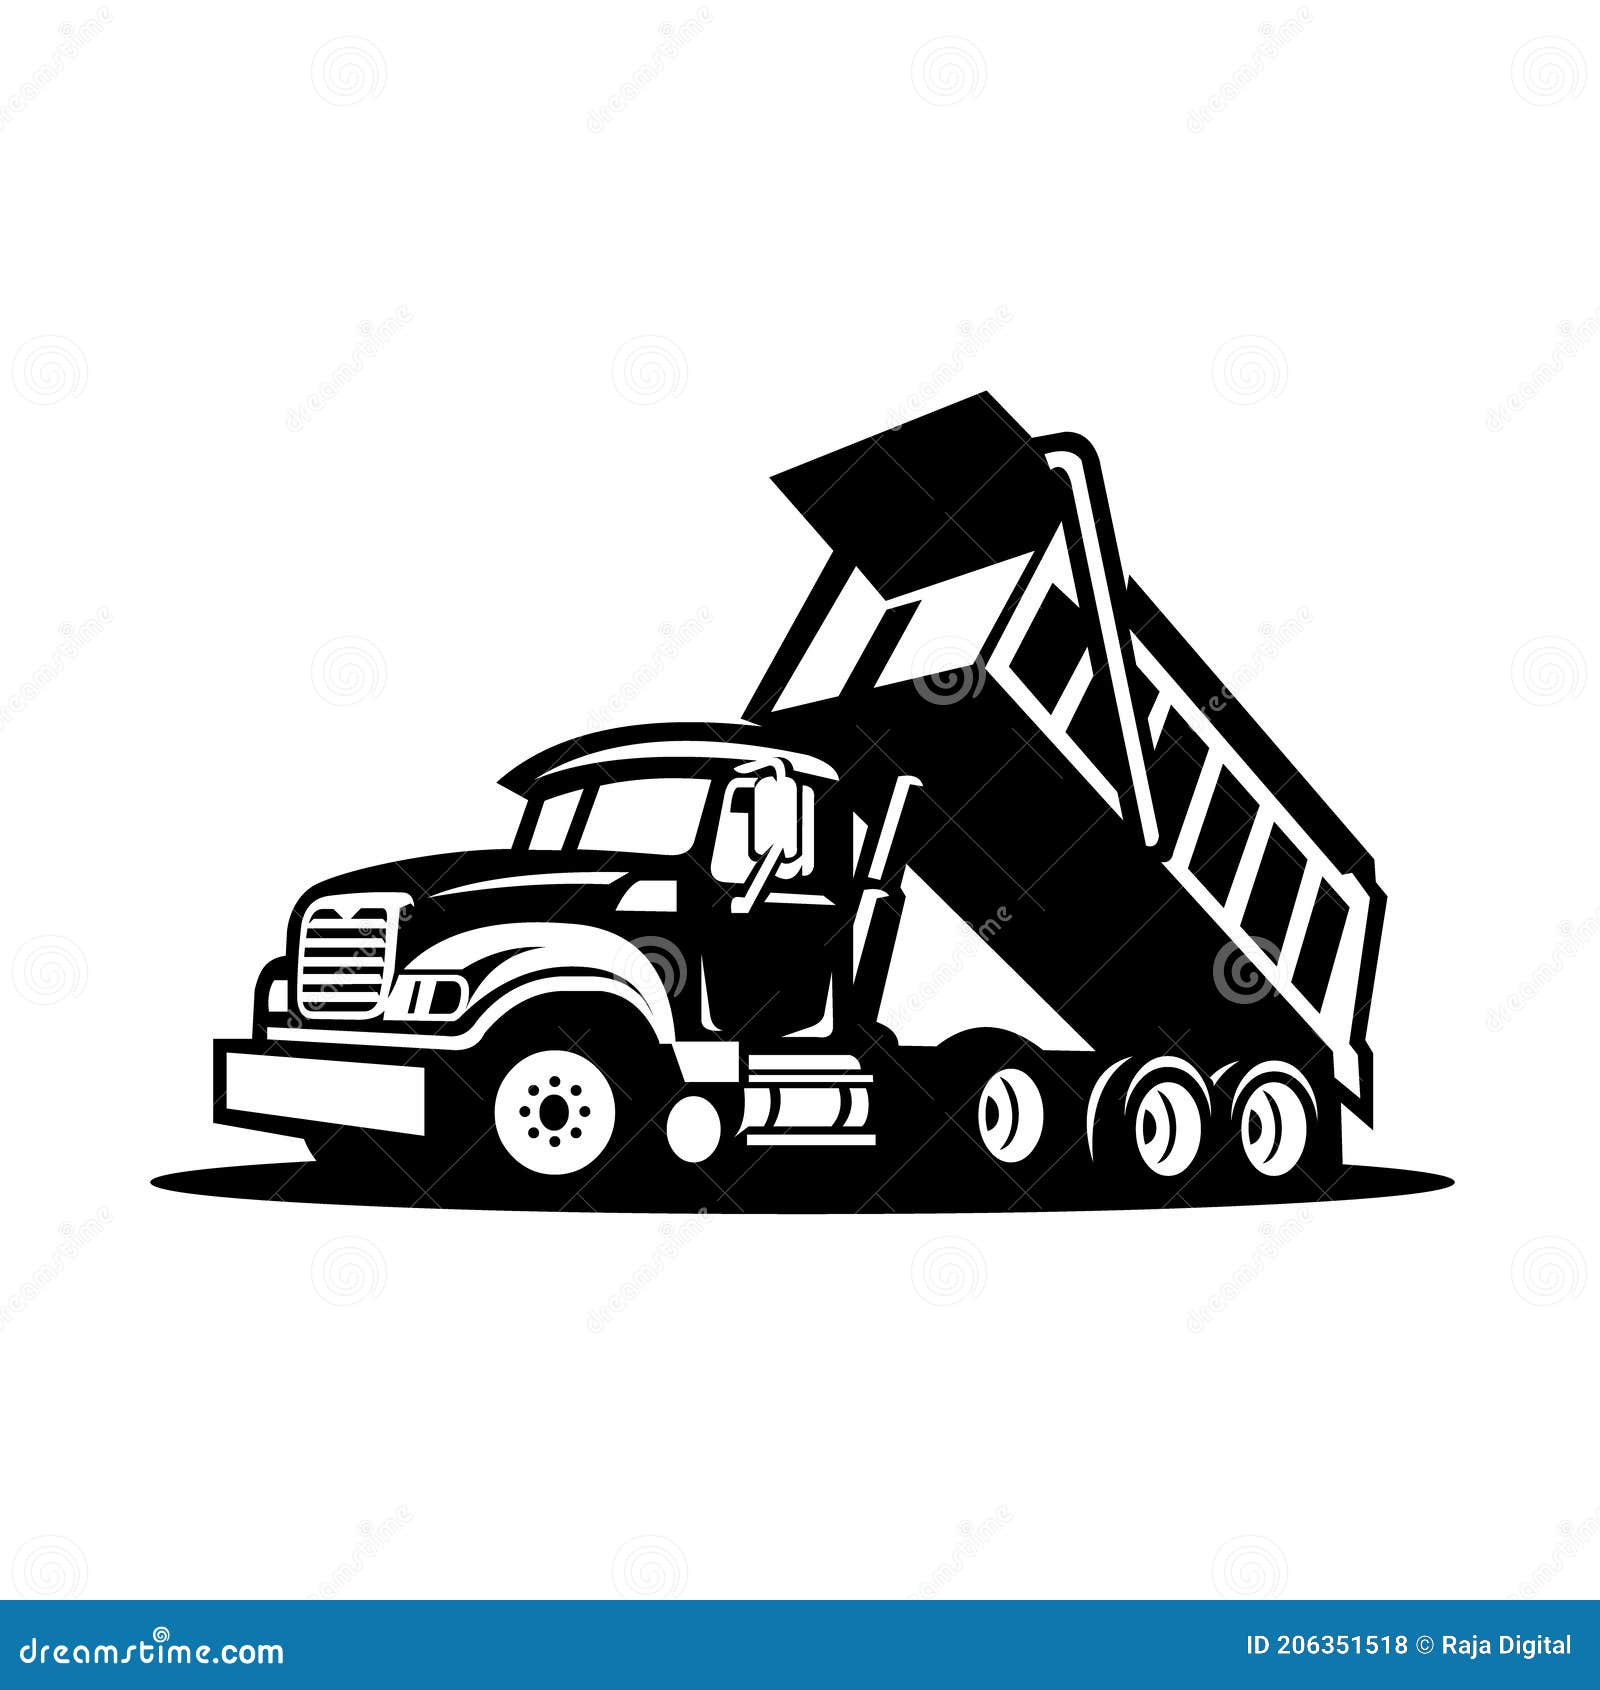 dump truck logo ideas 3